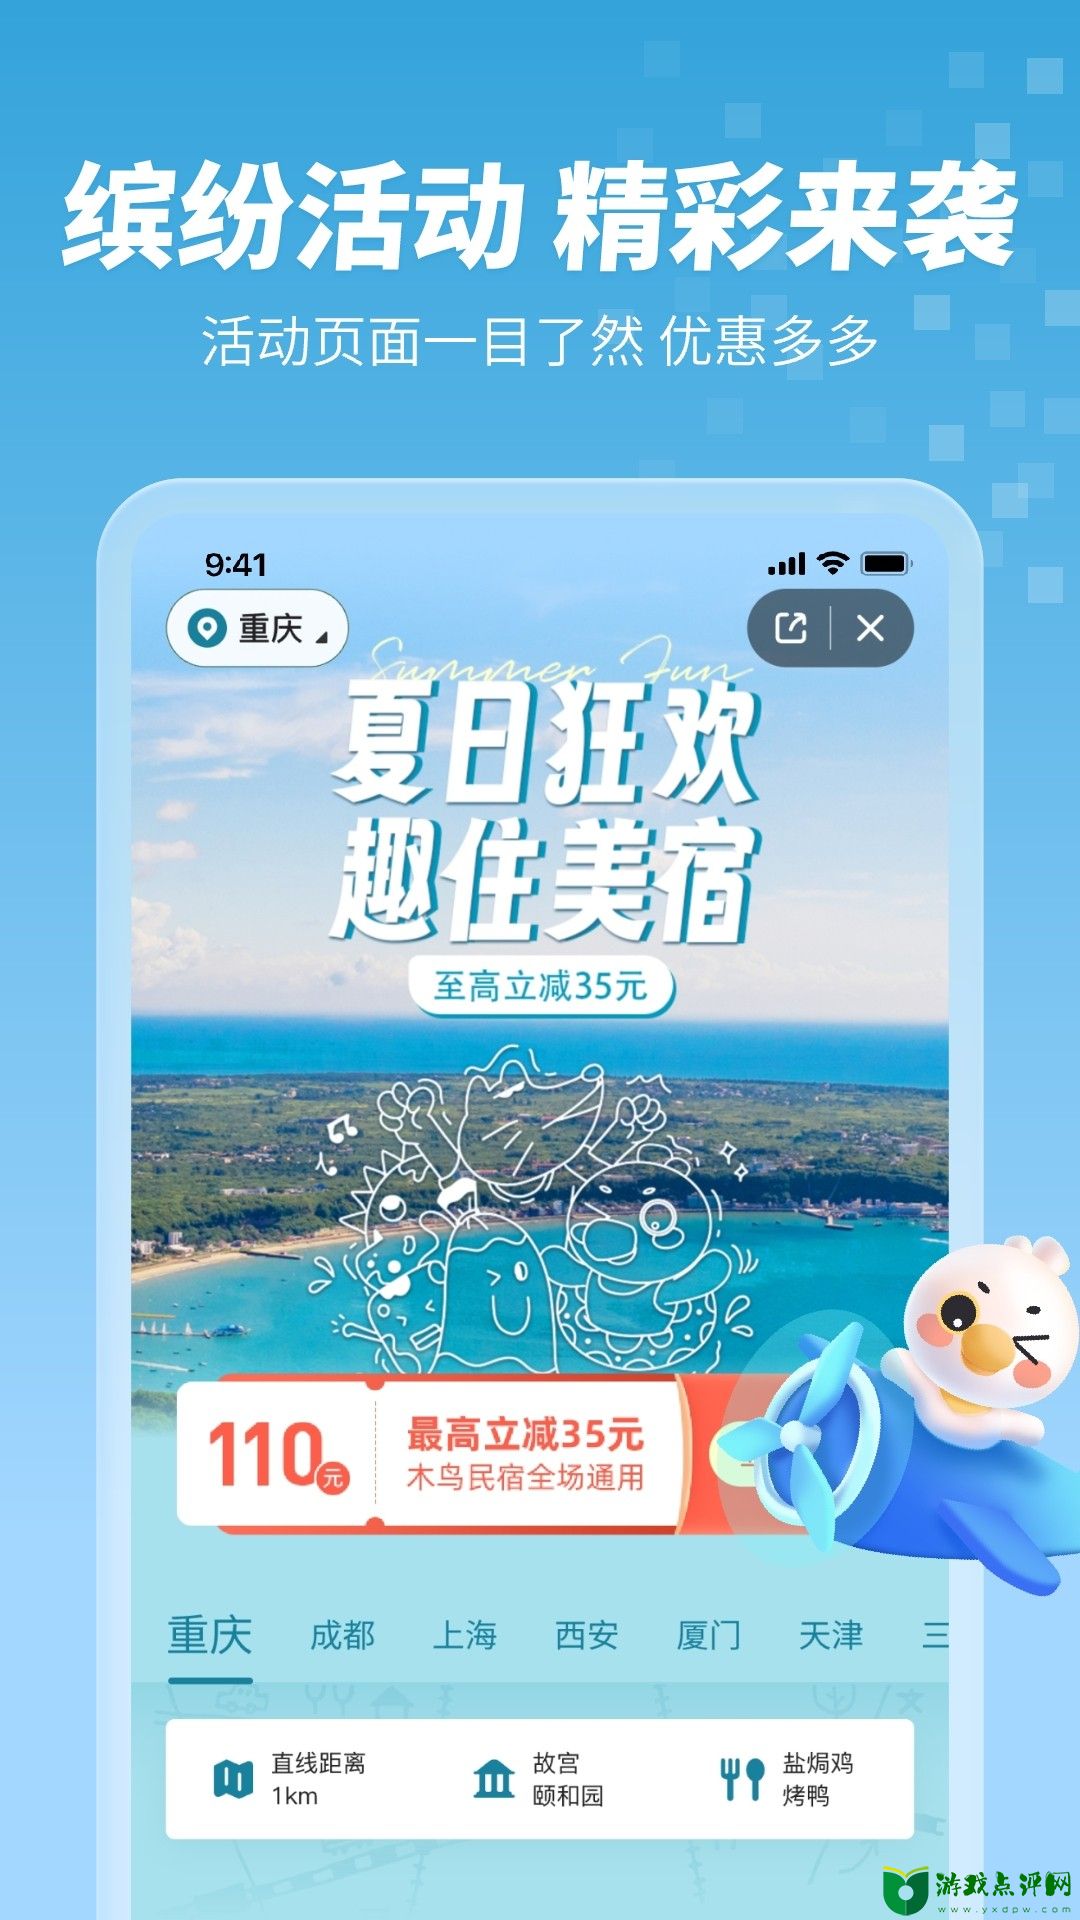 木鸟民宿app下载